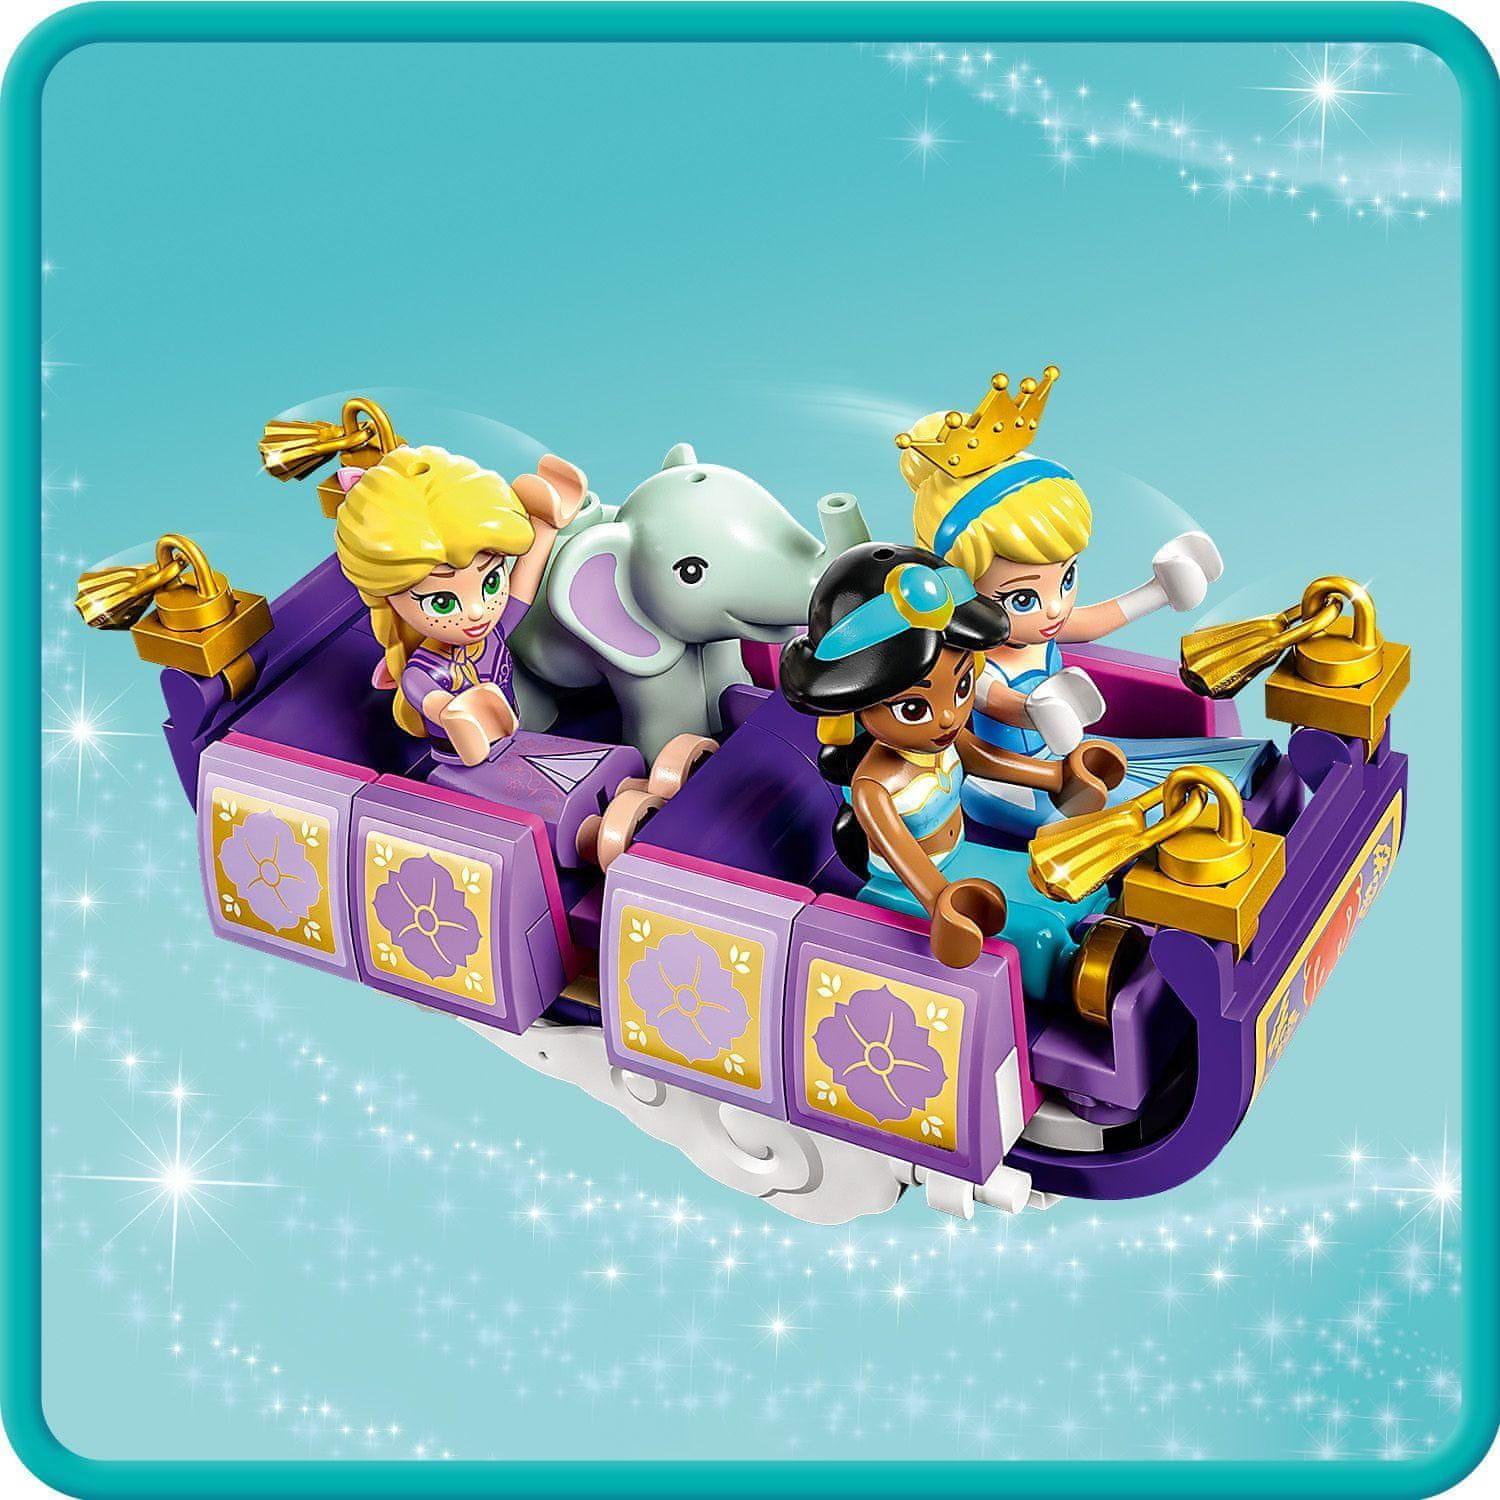 LEGO Disney Princess 43216 Kouzelný výlet s princeznami